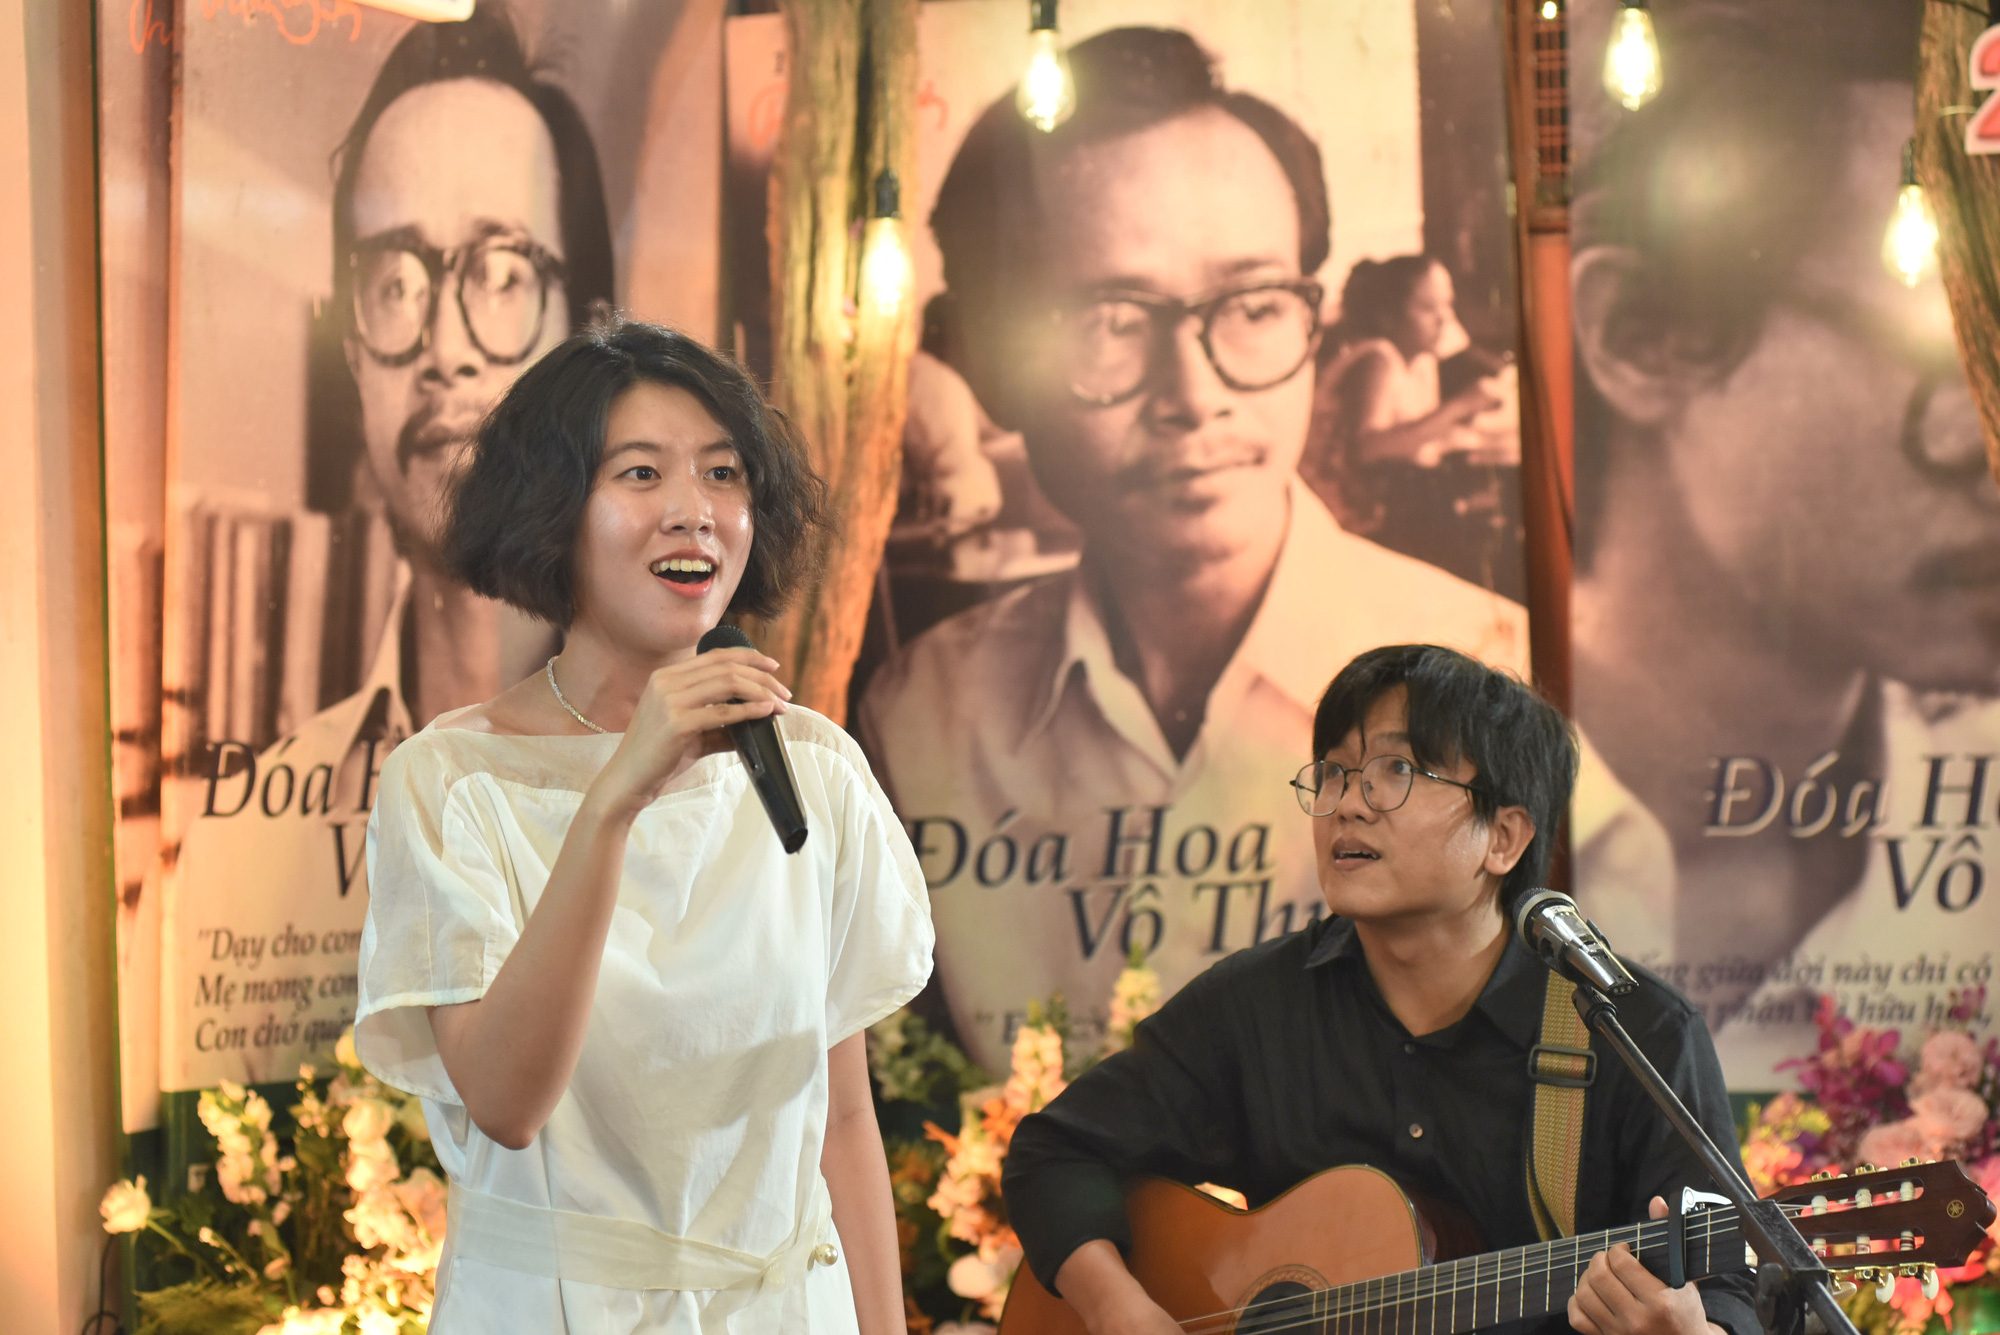 Hồng Nhung, Quang Dũng, Lân Nhã, Cẩm Vân hát ở ngôi nhà Trịnh Công Sơn từng sống - Ảnh 1.